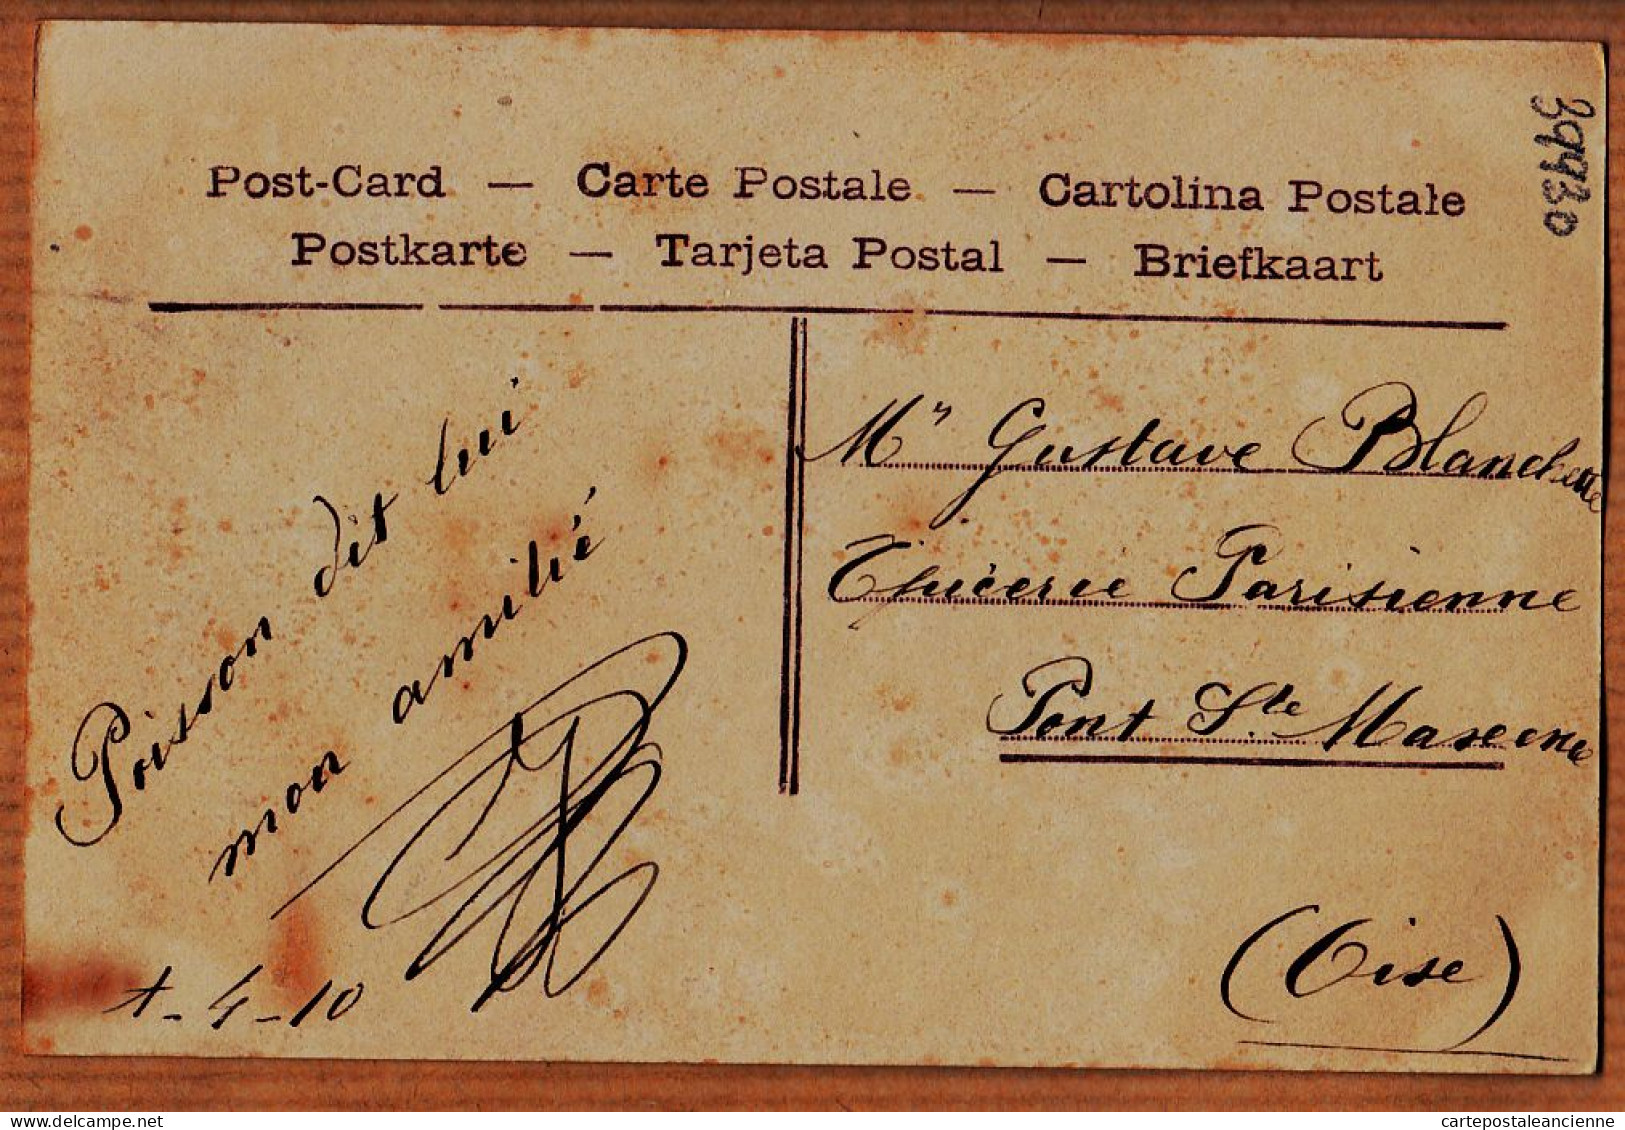 38802  / ⭐ Poisson 1er Premier AVRIL Devinez 1910 à Gustave BLANCHETTE Epicerie Parisienne Pont-Maxence Oise P.C 2031 - Erster April